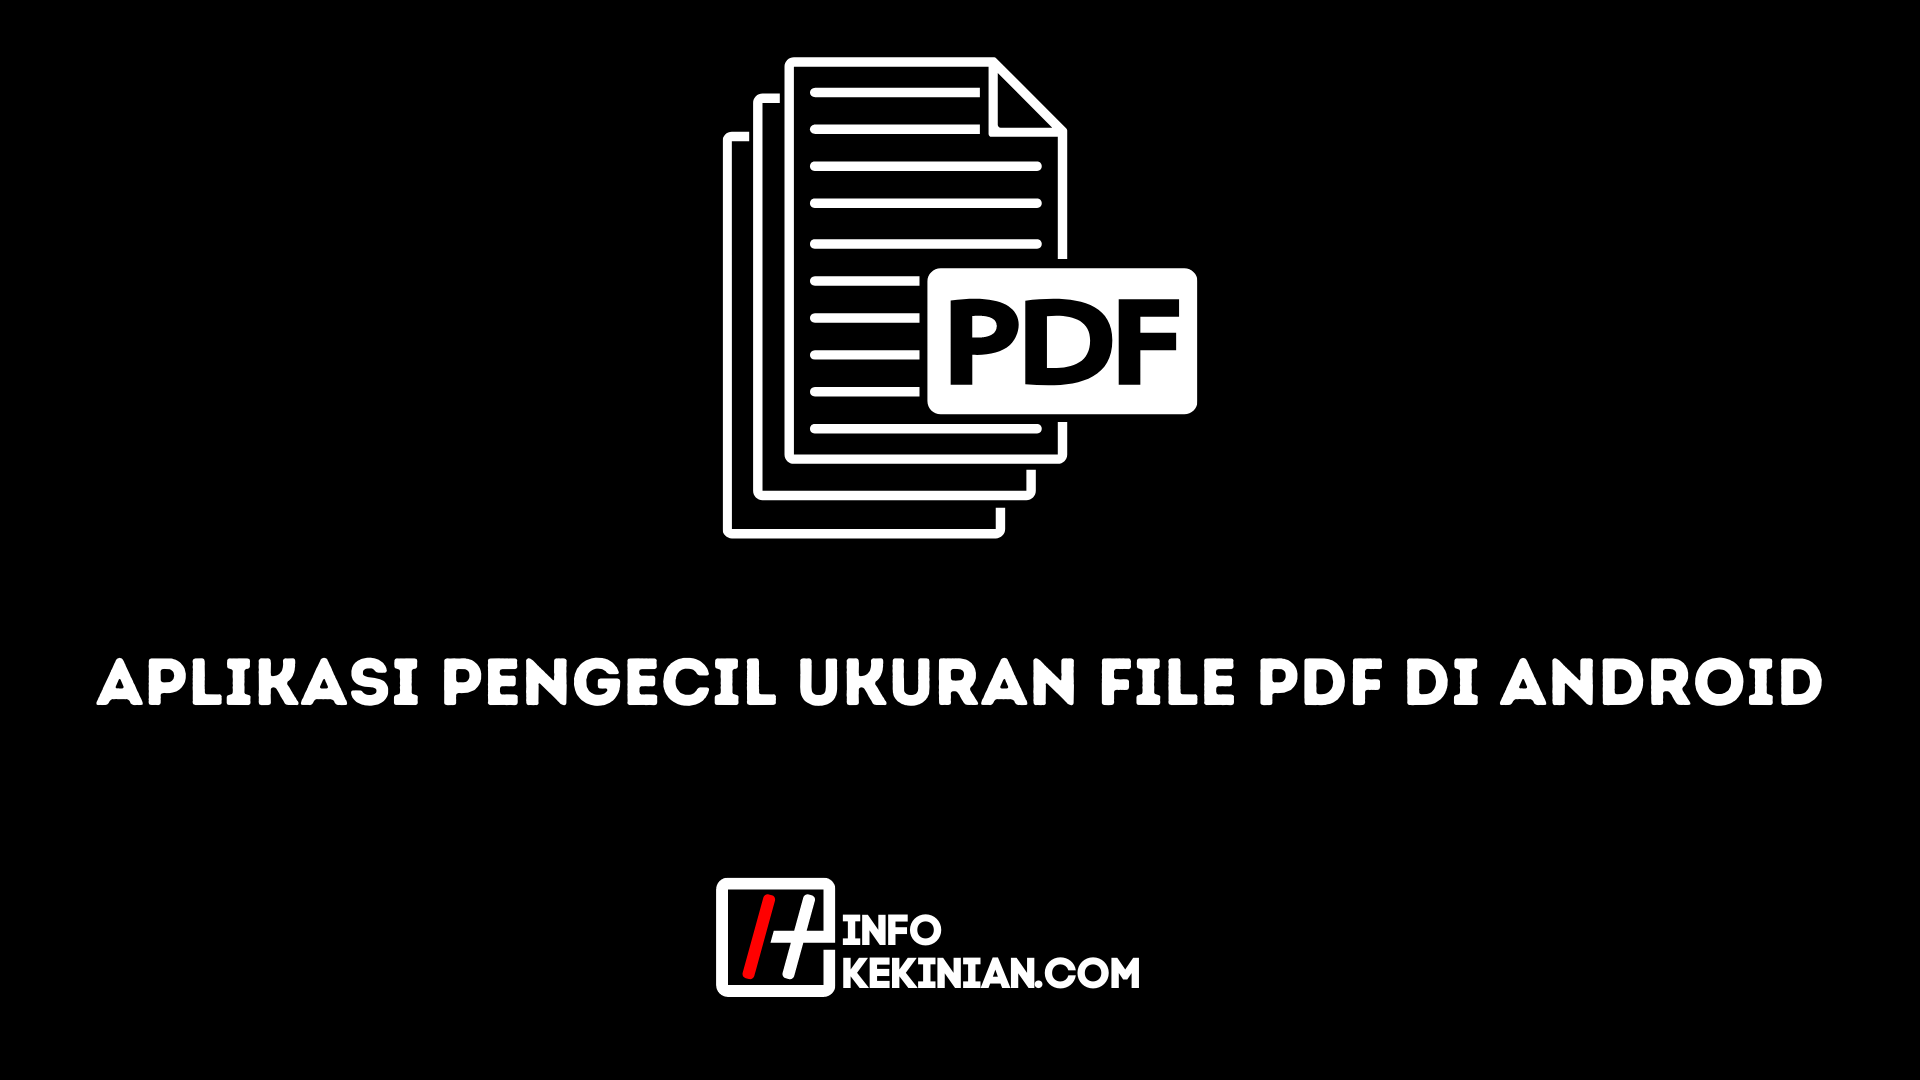 Aplikasi Pengecil Ukuran File PDF di Android